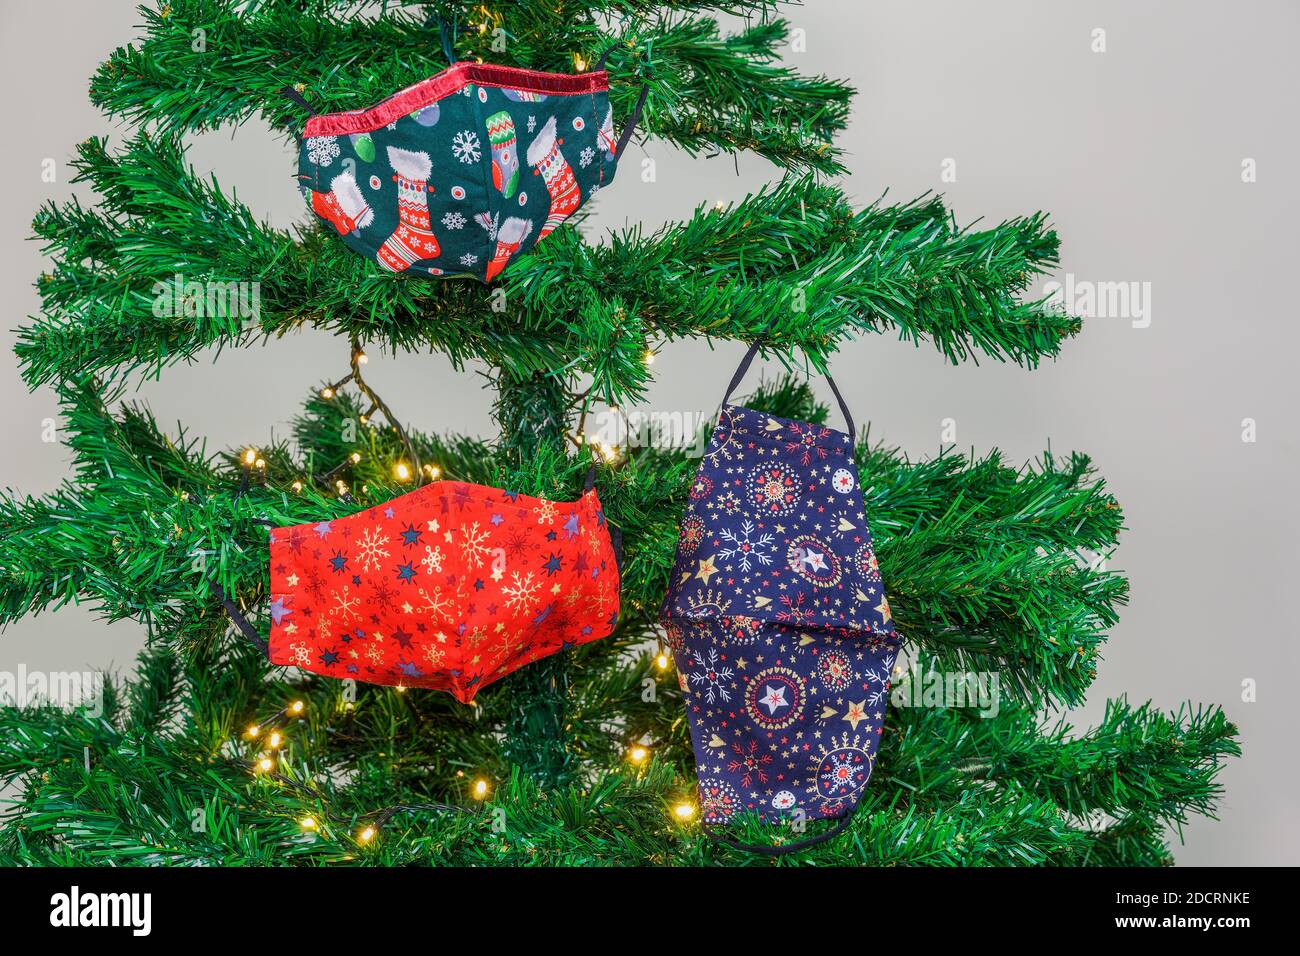 Natale covid-19 maschere appendere come decorazione su albero con luci. La protezione del viso del coronavirus festivo si disegna come ornamenti stagionali sull'albero artificiale. Foto Stock